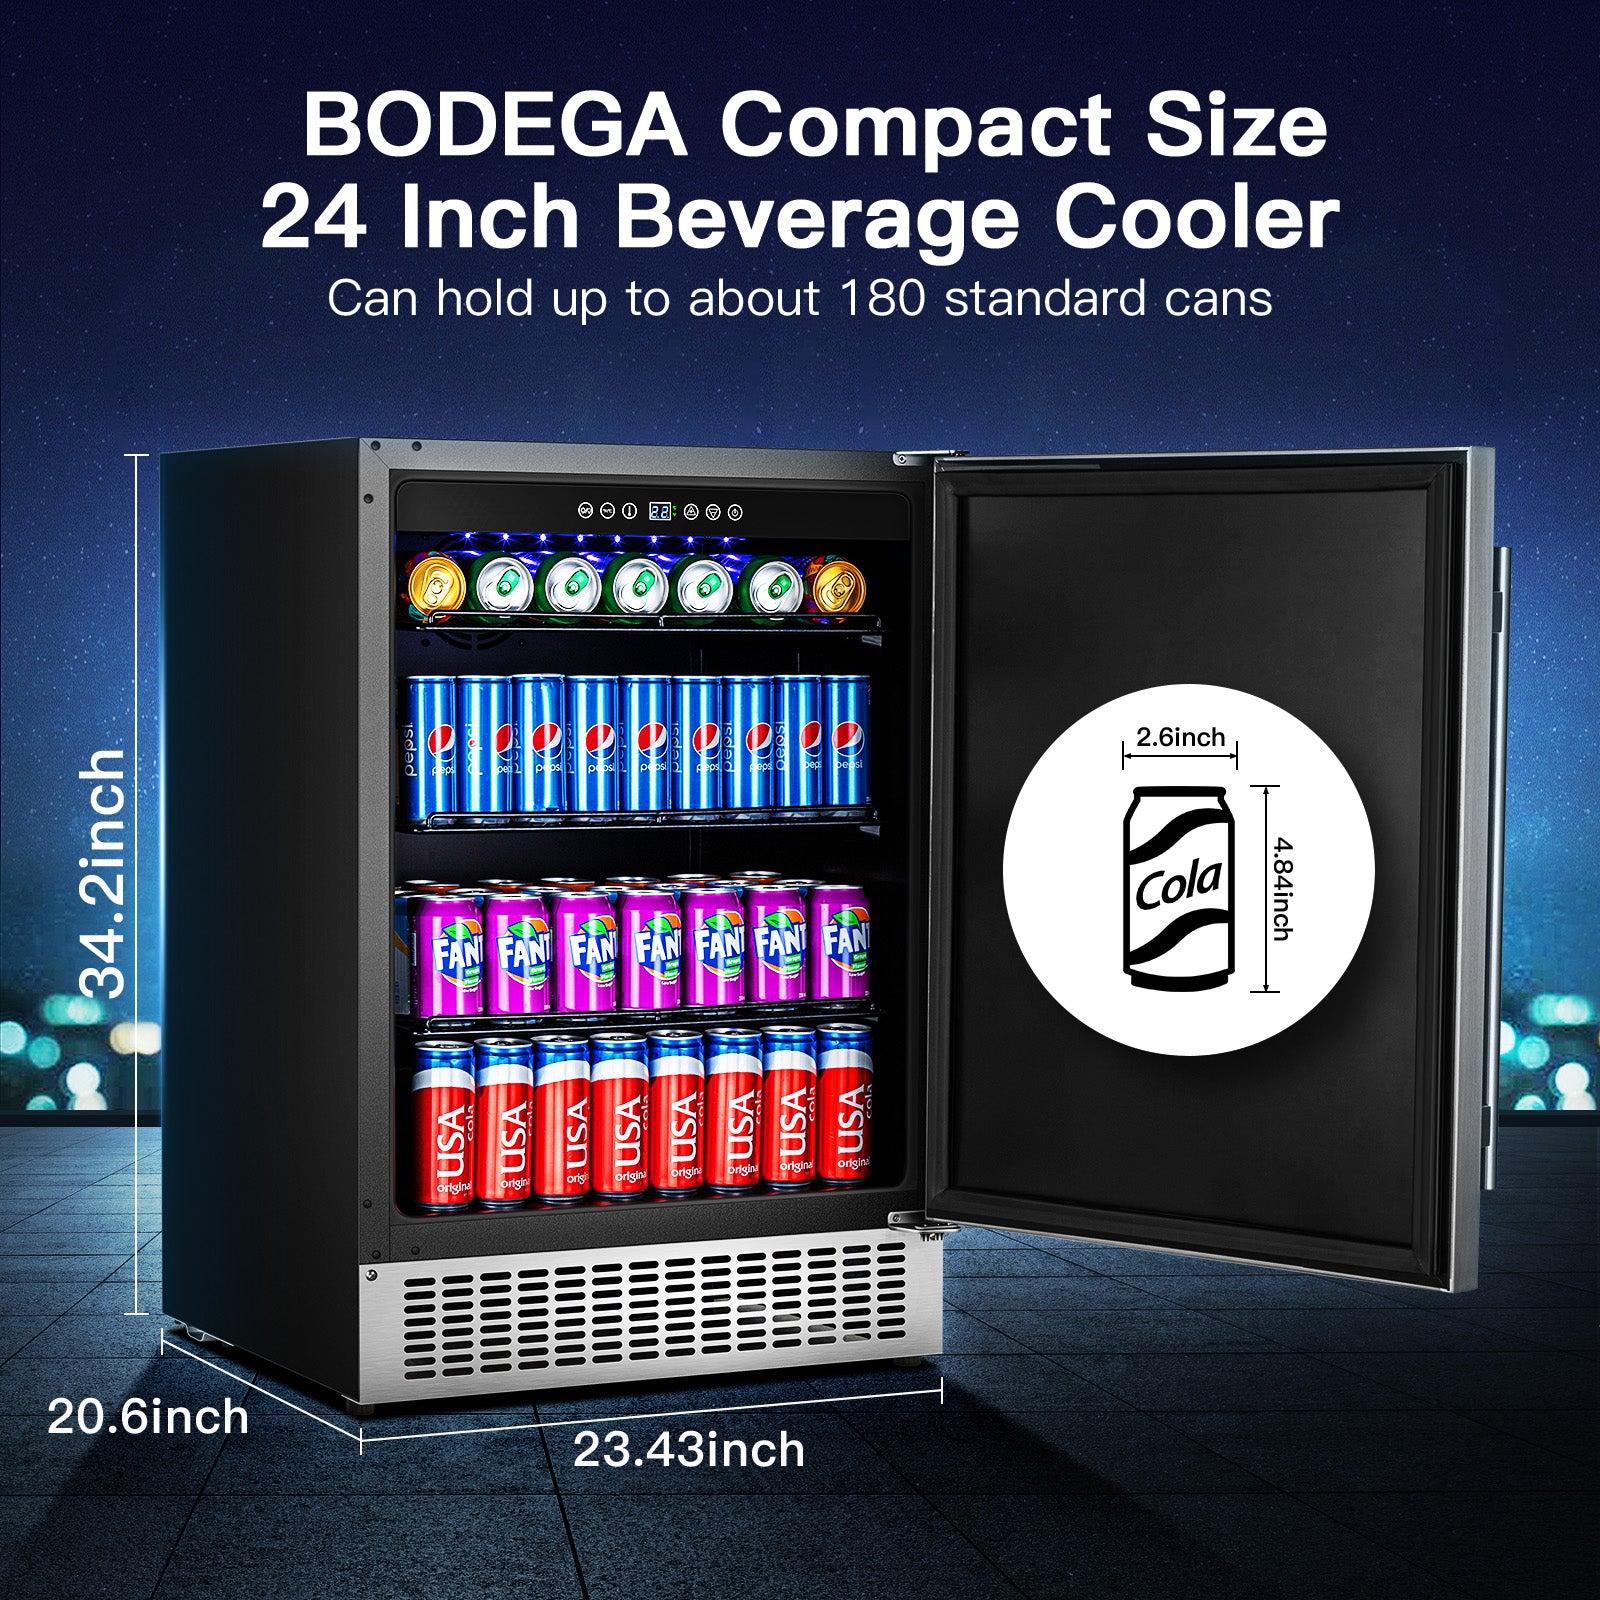 https://www.bodegacooler.com/cdn/shop/products/BODEGABeverageCooler24Inch_Built-inandFreestandingBeverageRefrigerator180Cans.png2.jpg?v=1634786242